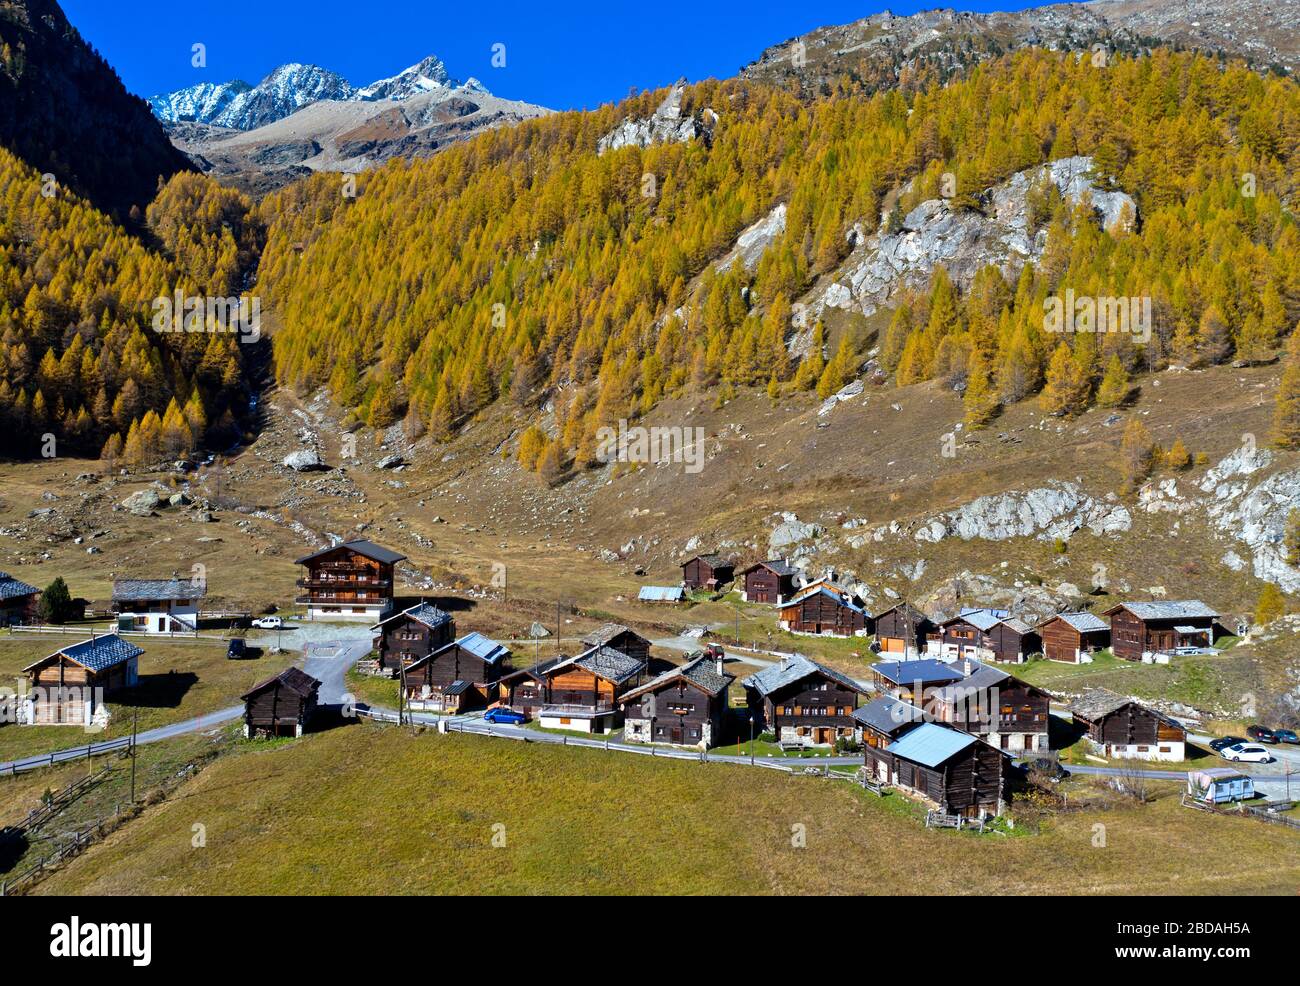 Le hameau de Satarma au pied d'une forêt de mélèze aux couleurs vives de l'automne, Val d'Herens, Eringertal, Valais, Suisse Banque D'Images